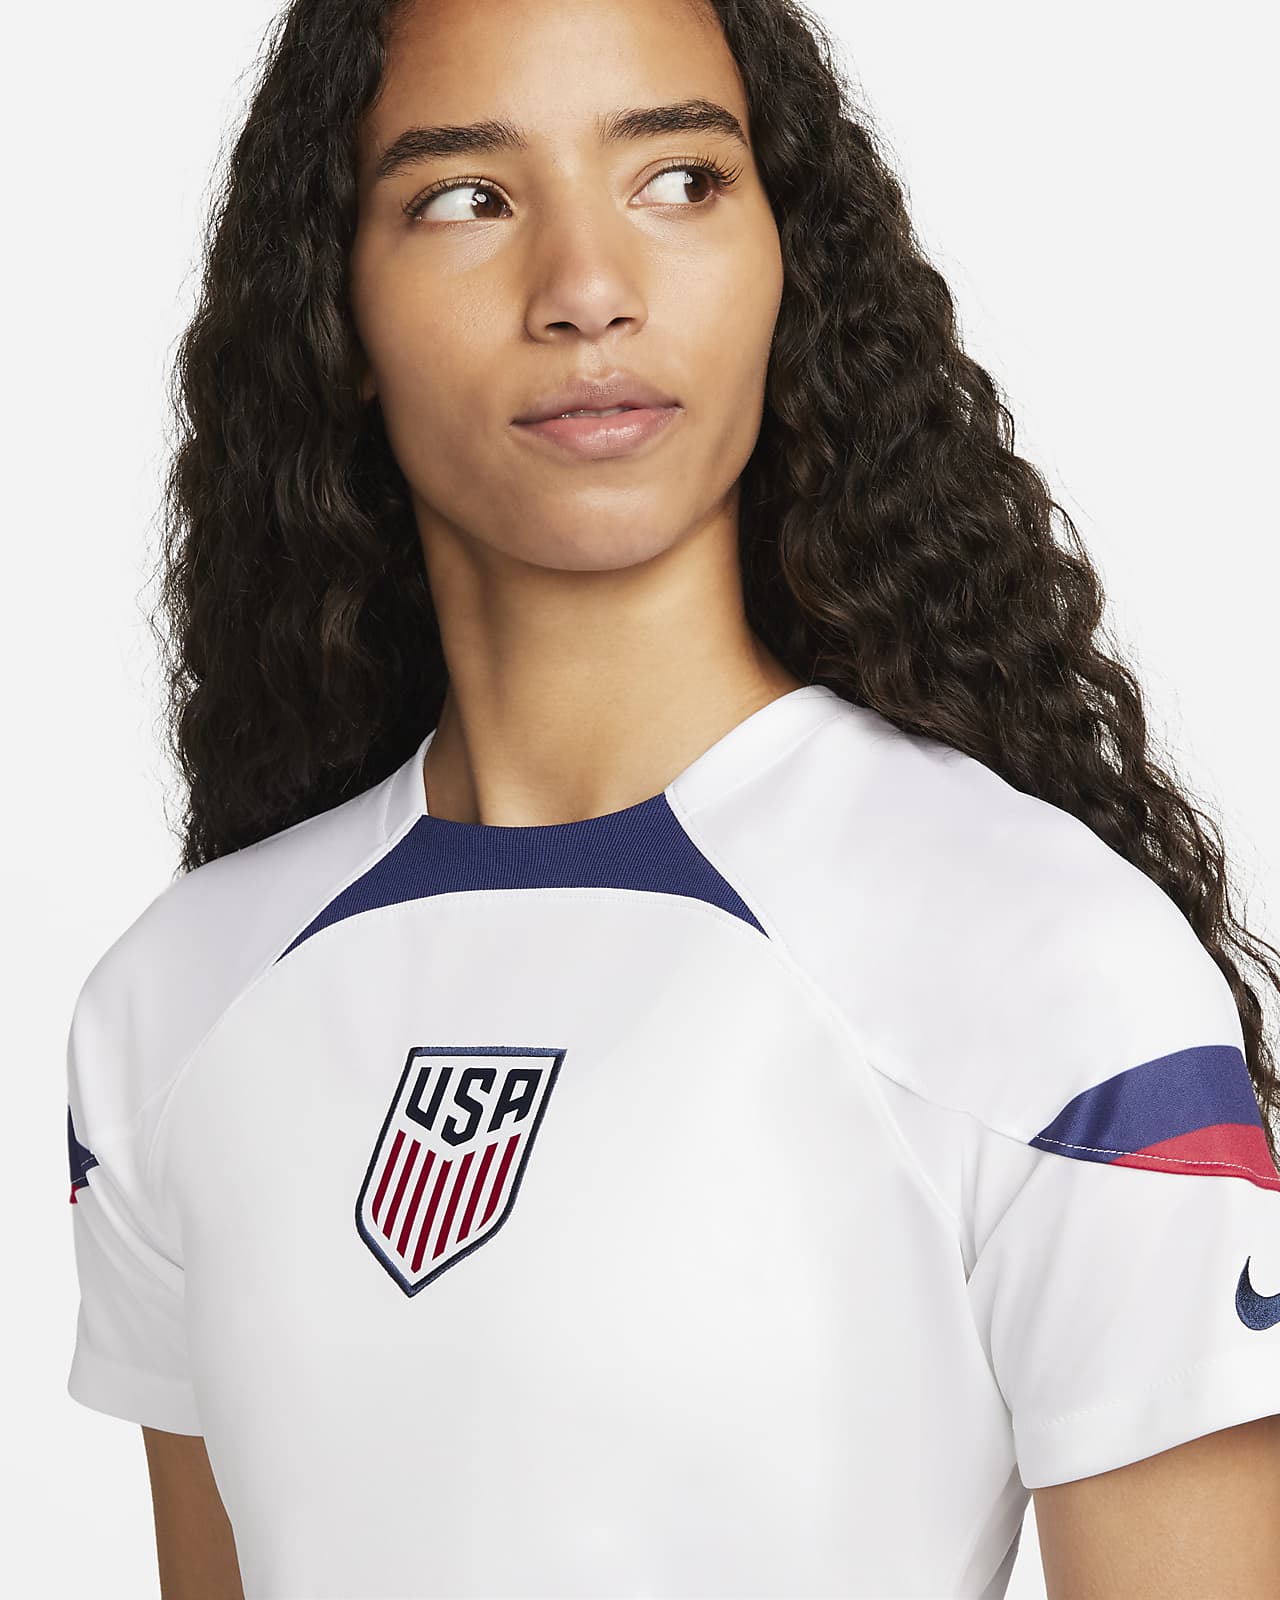 USA Women's Soccer Team Nike Jersey Is a Bestseller – WWD